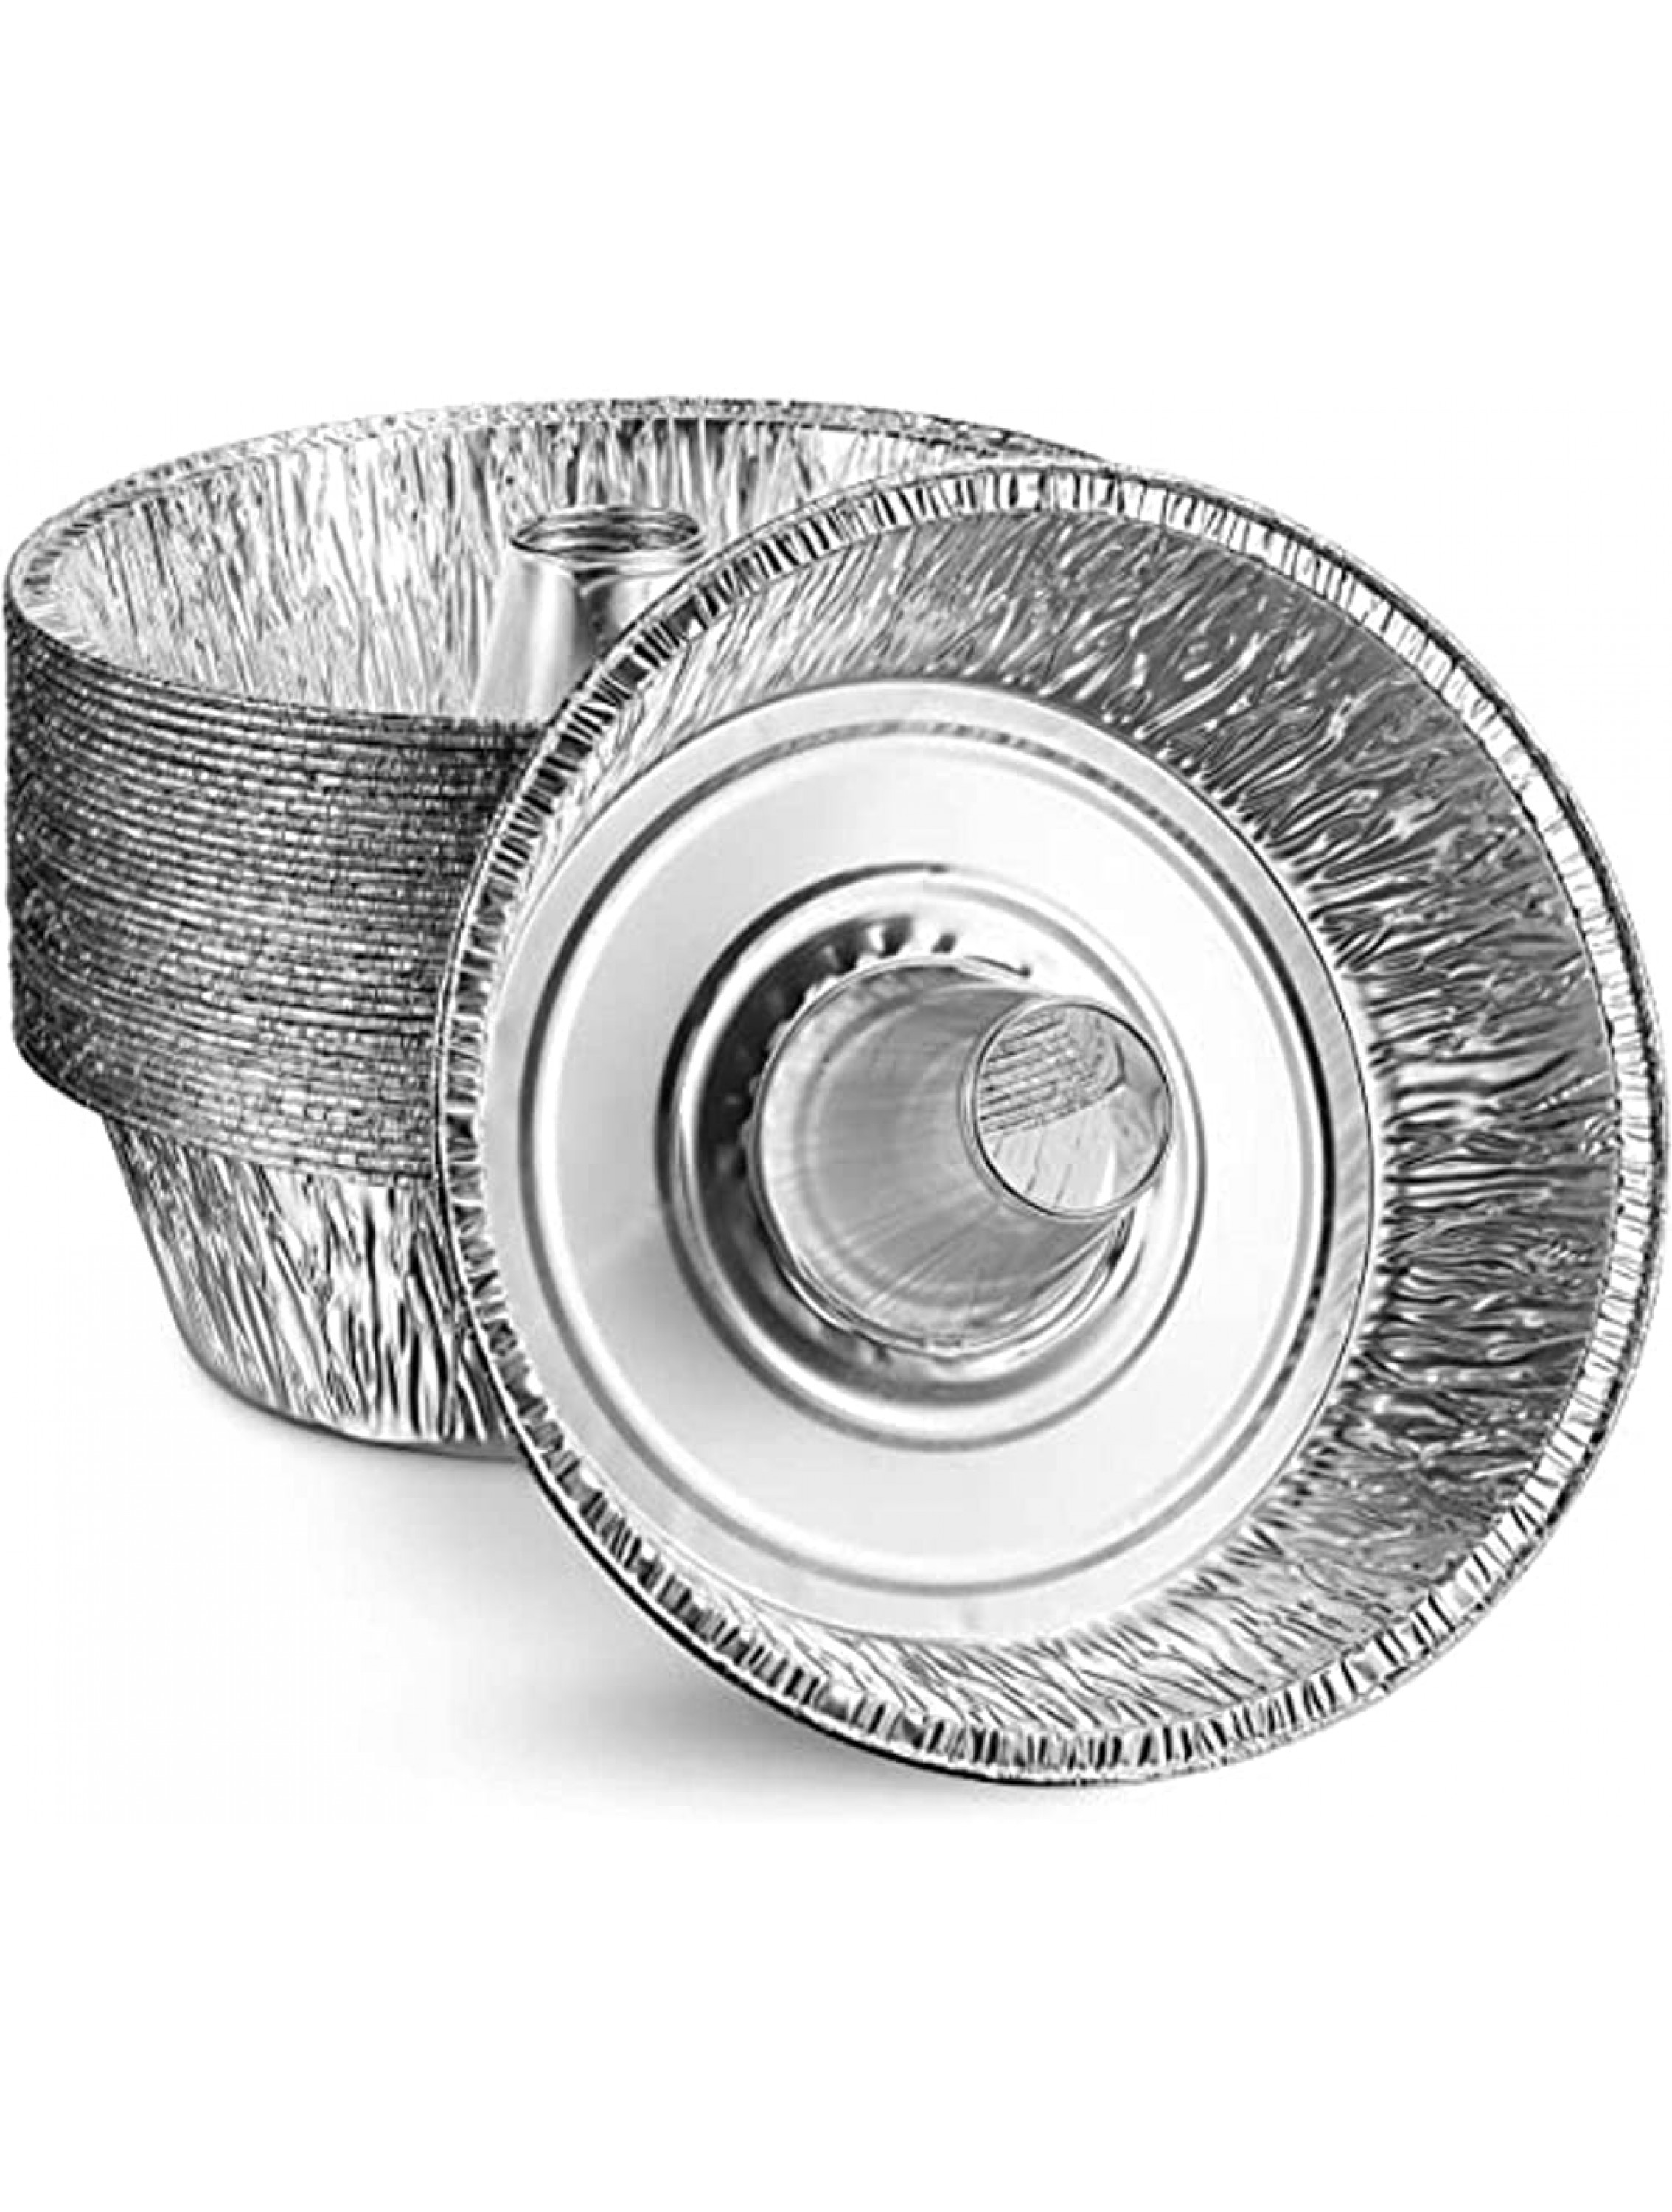 Disposable Aluminum 8 Angel Tube Foil Pans: 100 Pans - BLANKF6D4